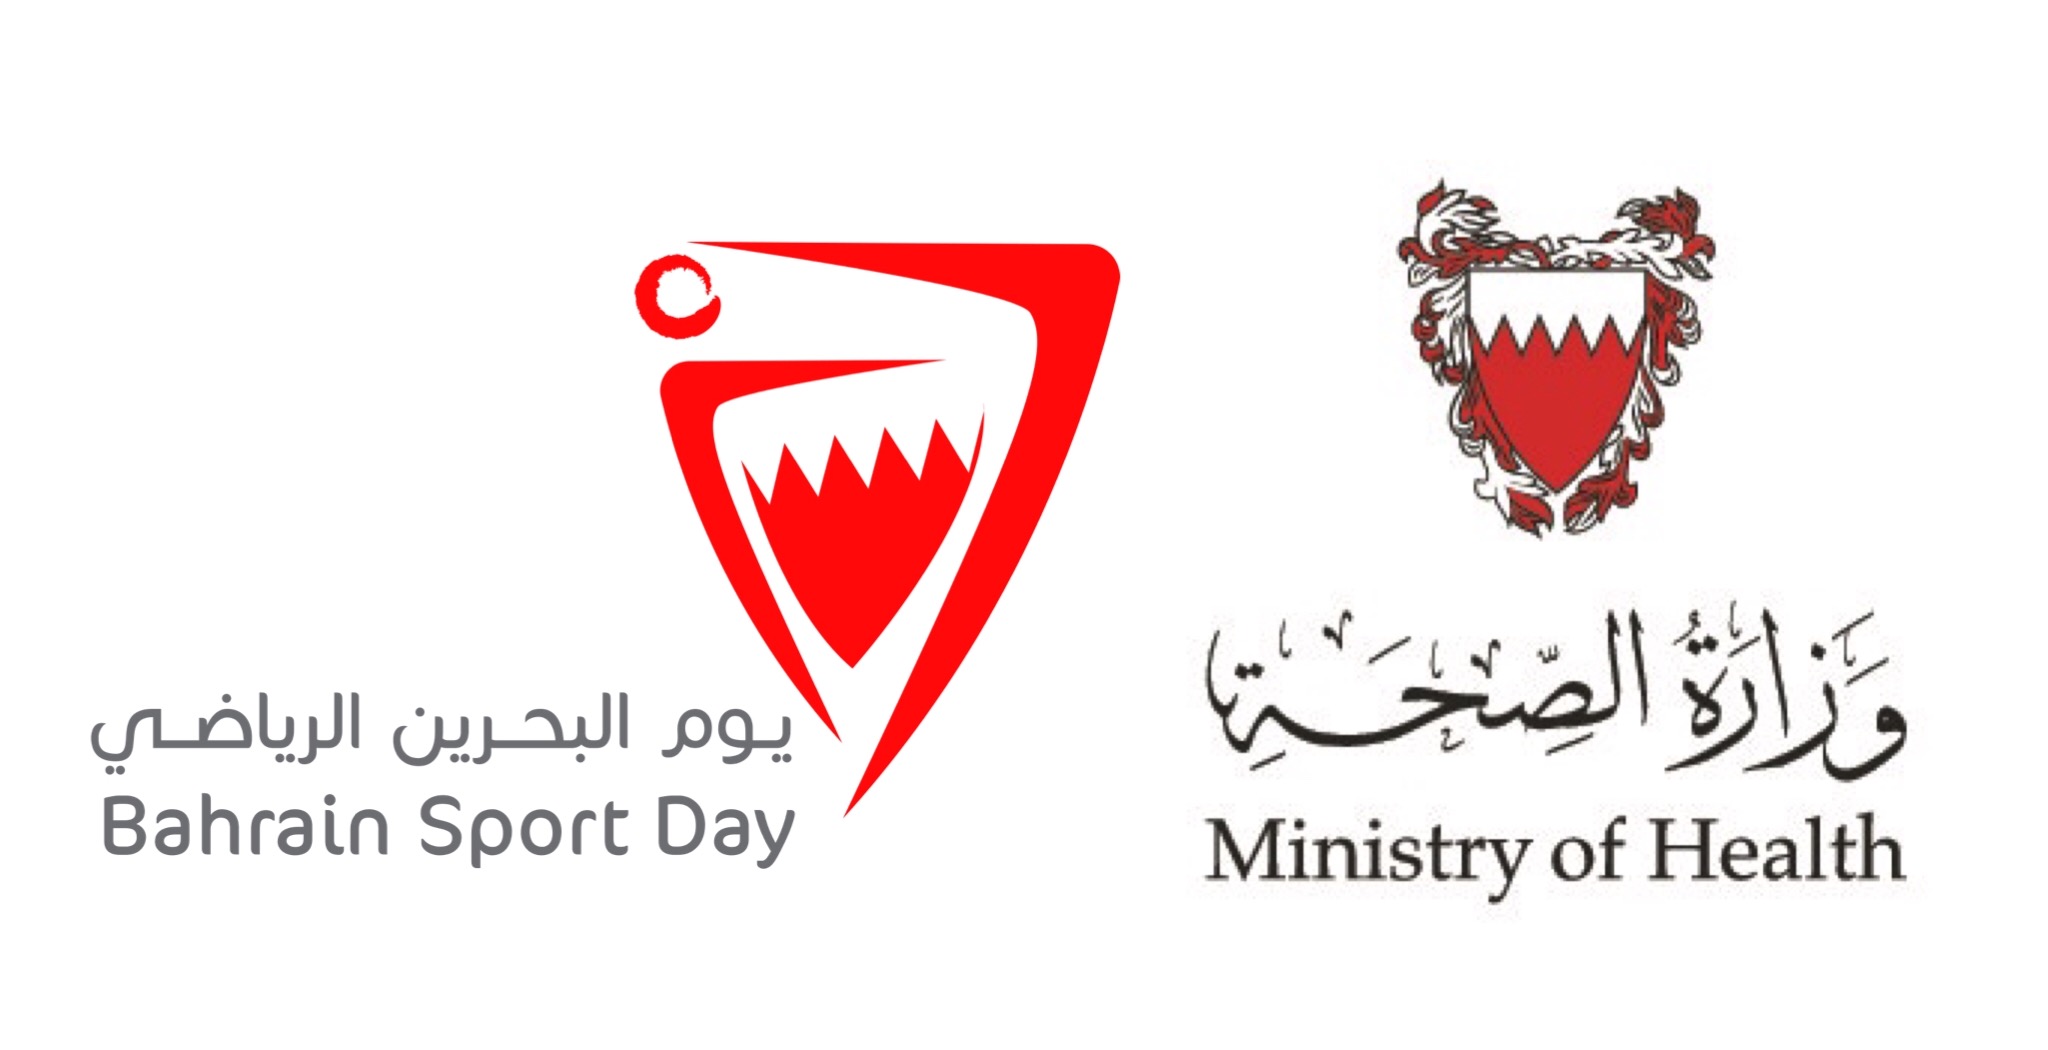 بيان من وزارة الصحة بمناسبة "يوم البحرين الرياضي 7 فبراير"